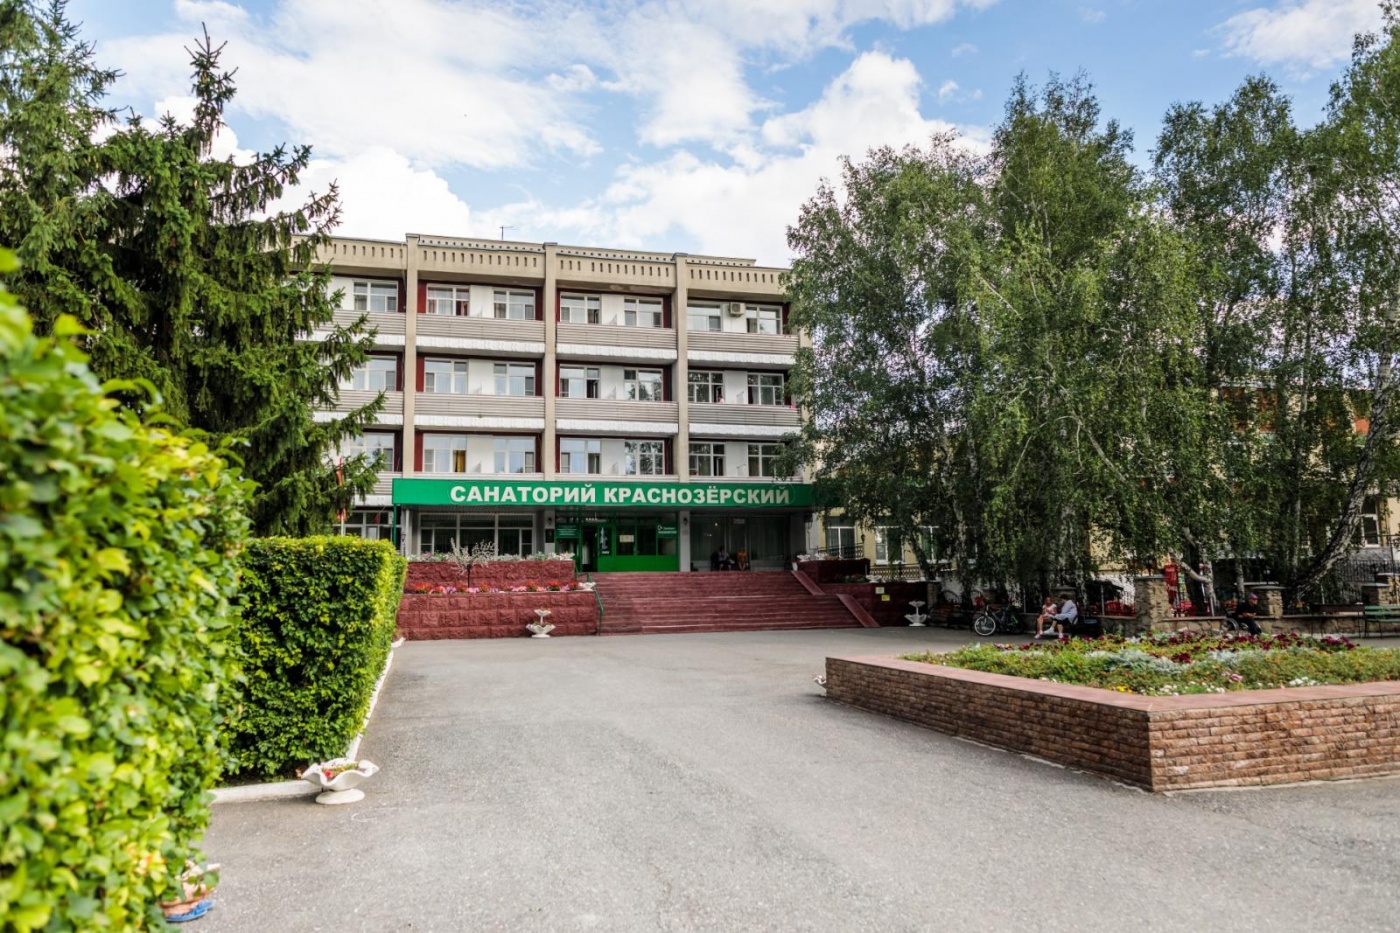  Санаторно-курортный комплекс "Краснозерский" Новосибирская область, фото 13